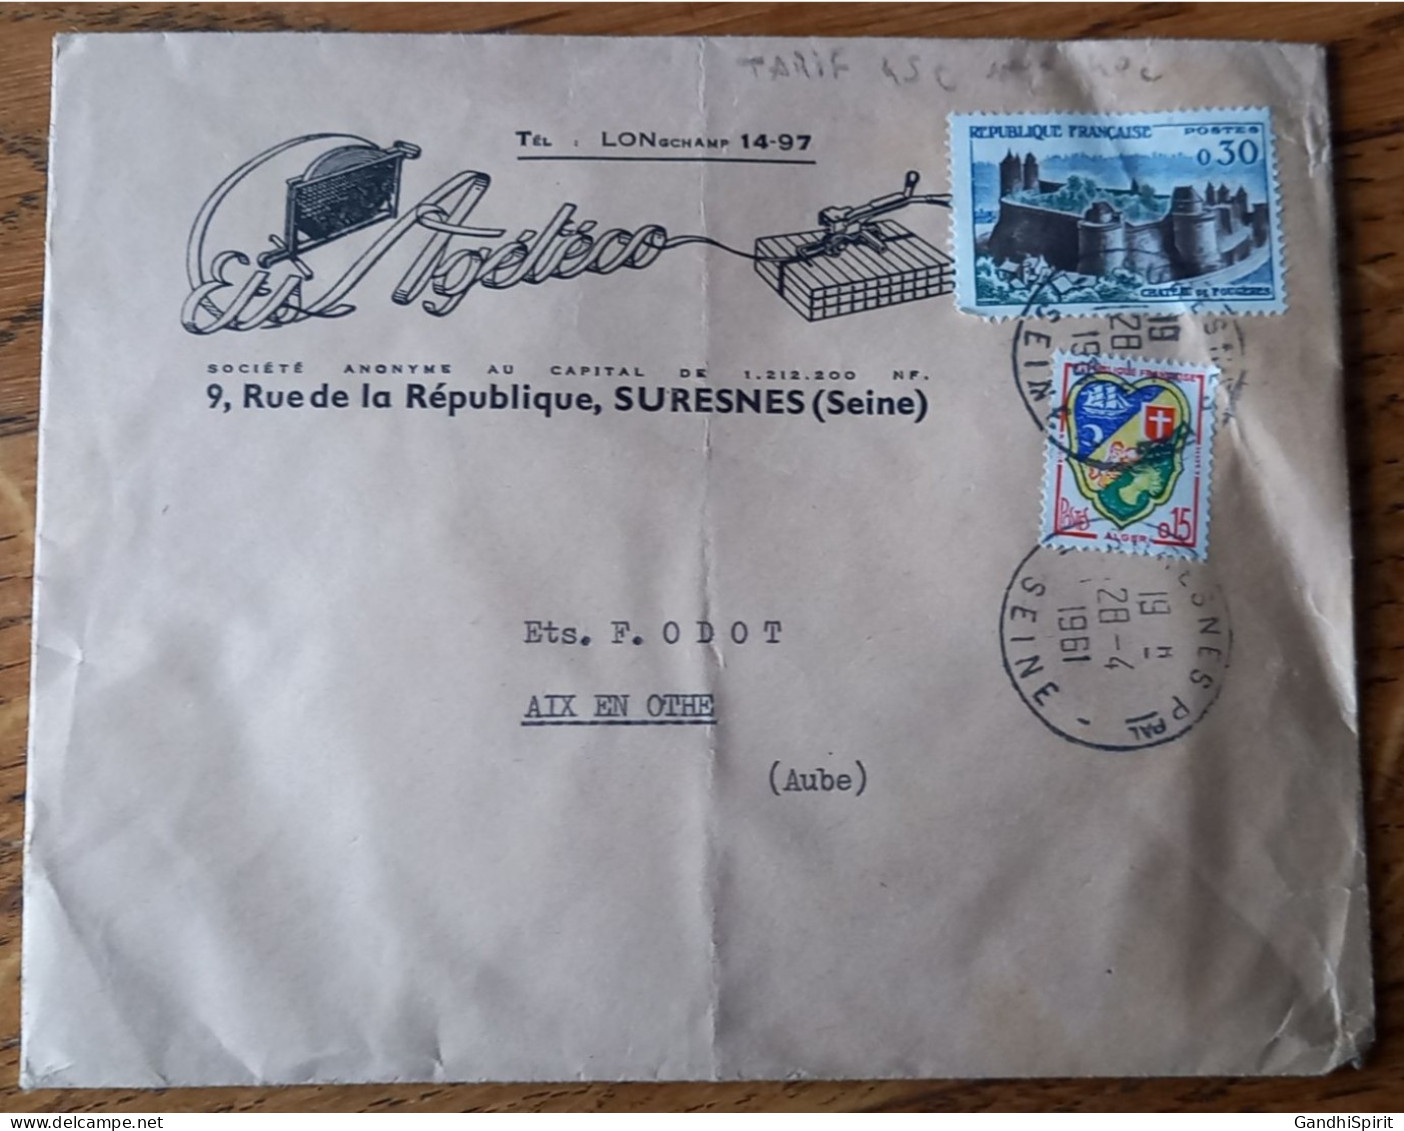 Tarif Postal De 1961 - 45c Pour 40c - Suresnes Principal Enveloppe à Entête Aix En Othe - TP N°1232, 1236 TAD 28.04.1961 - Tarifs Postaux